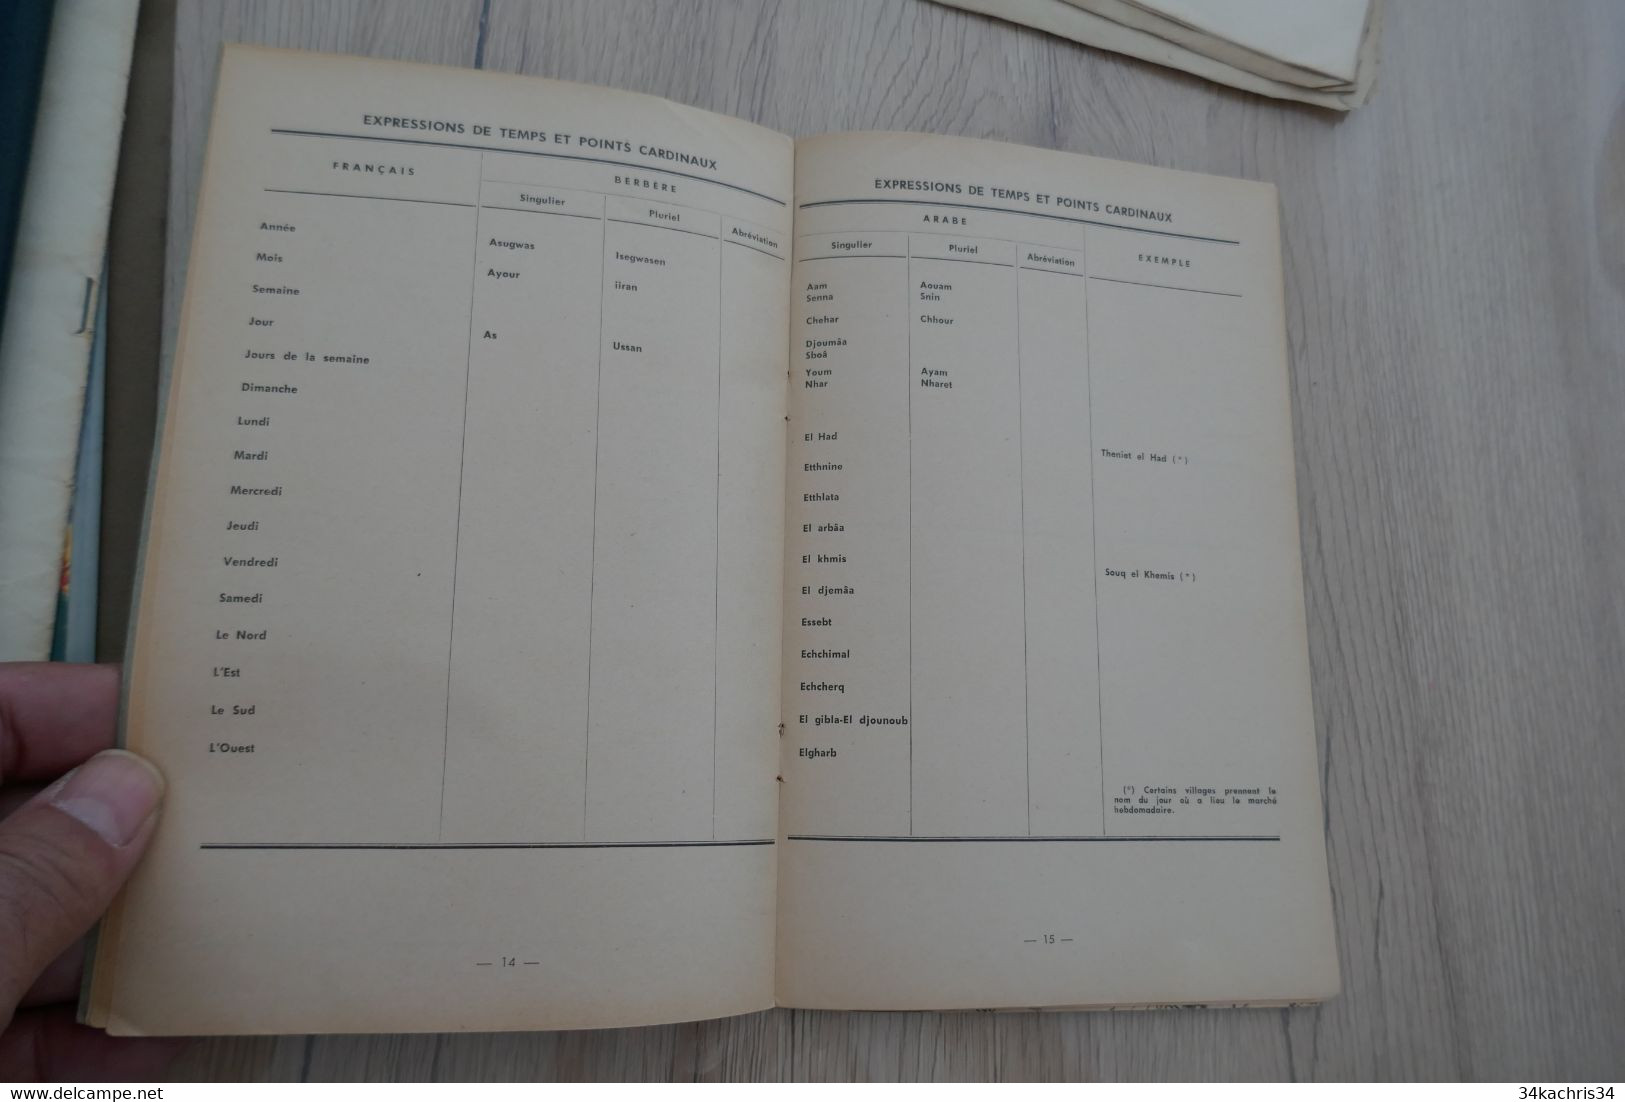 Plaquette 1959 Résumé De Toponymie Arabe Et Berbère Pour Servir à La Lecture Des Cartes A.F.N. 19p+ Carte - Documenten